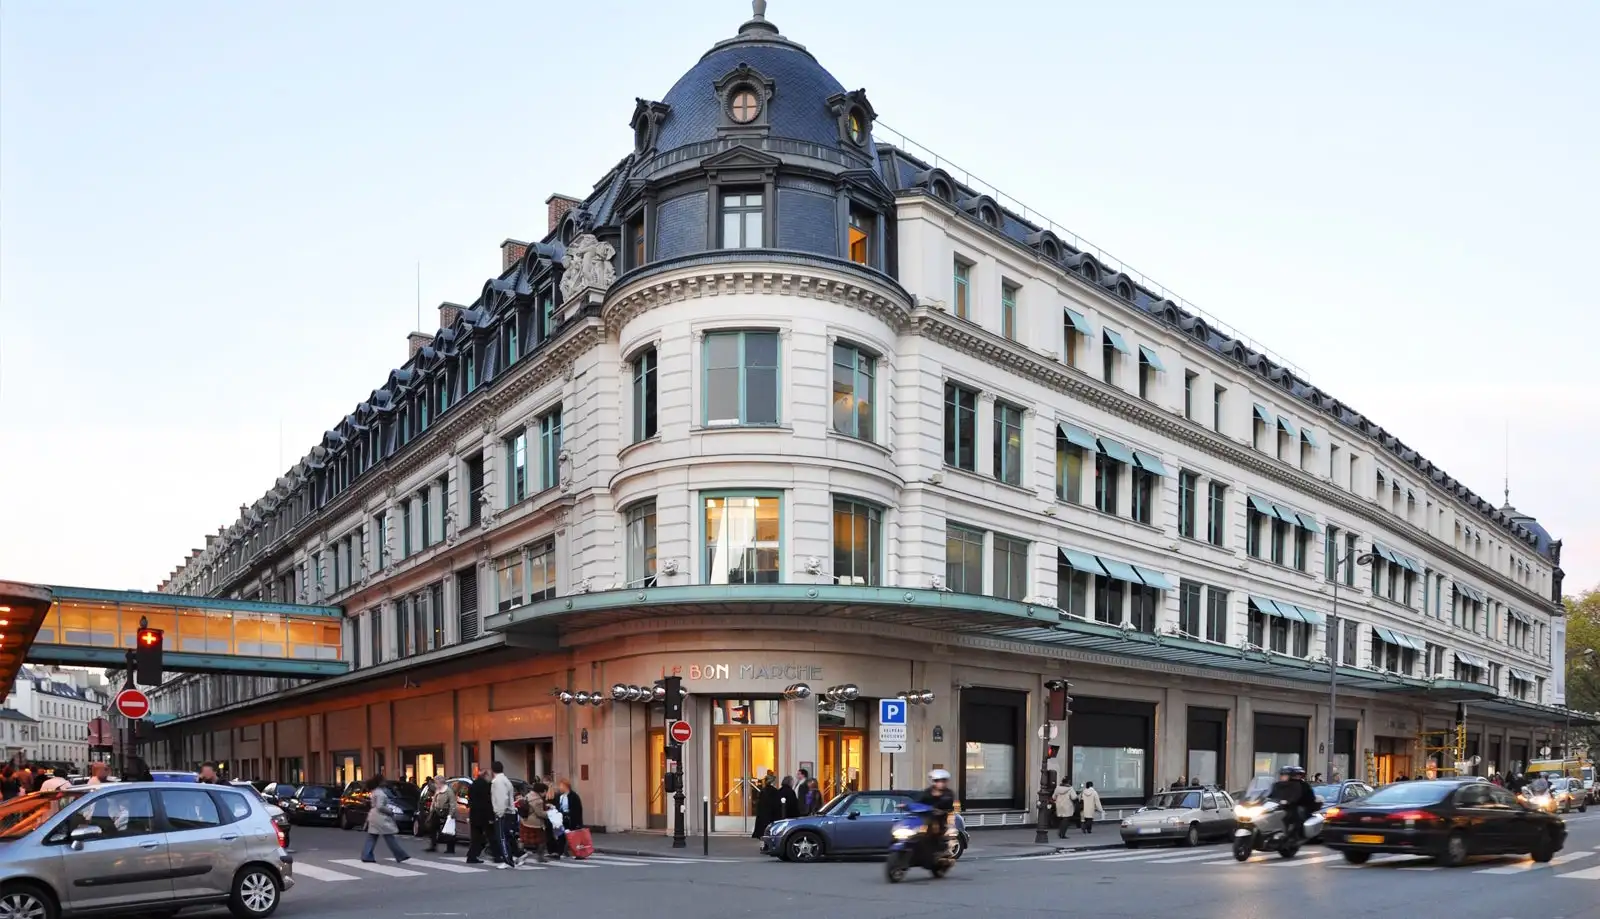 Thiên đường mua sắm tại thủ đô Paris